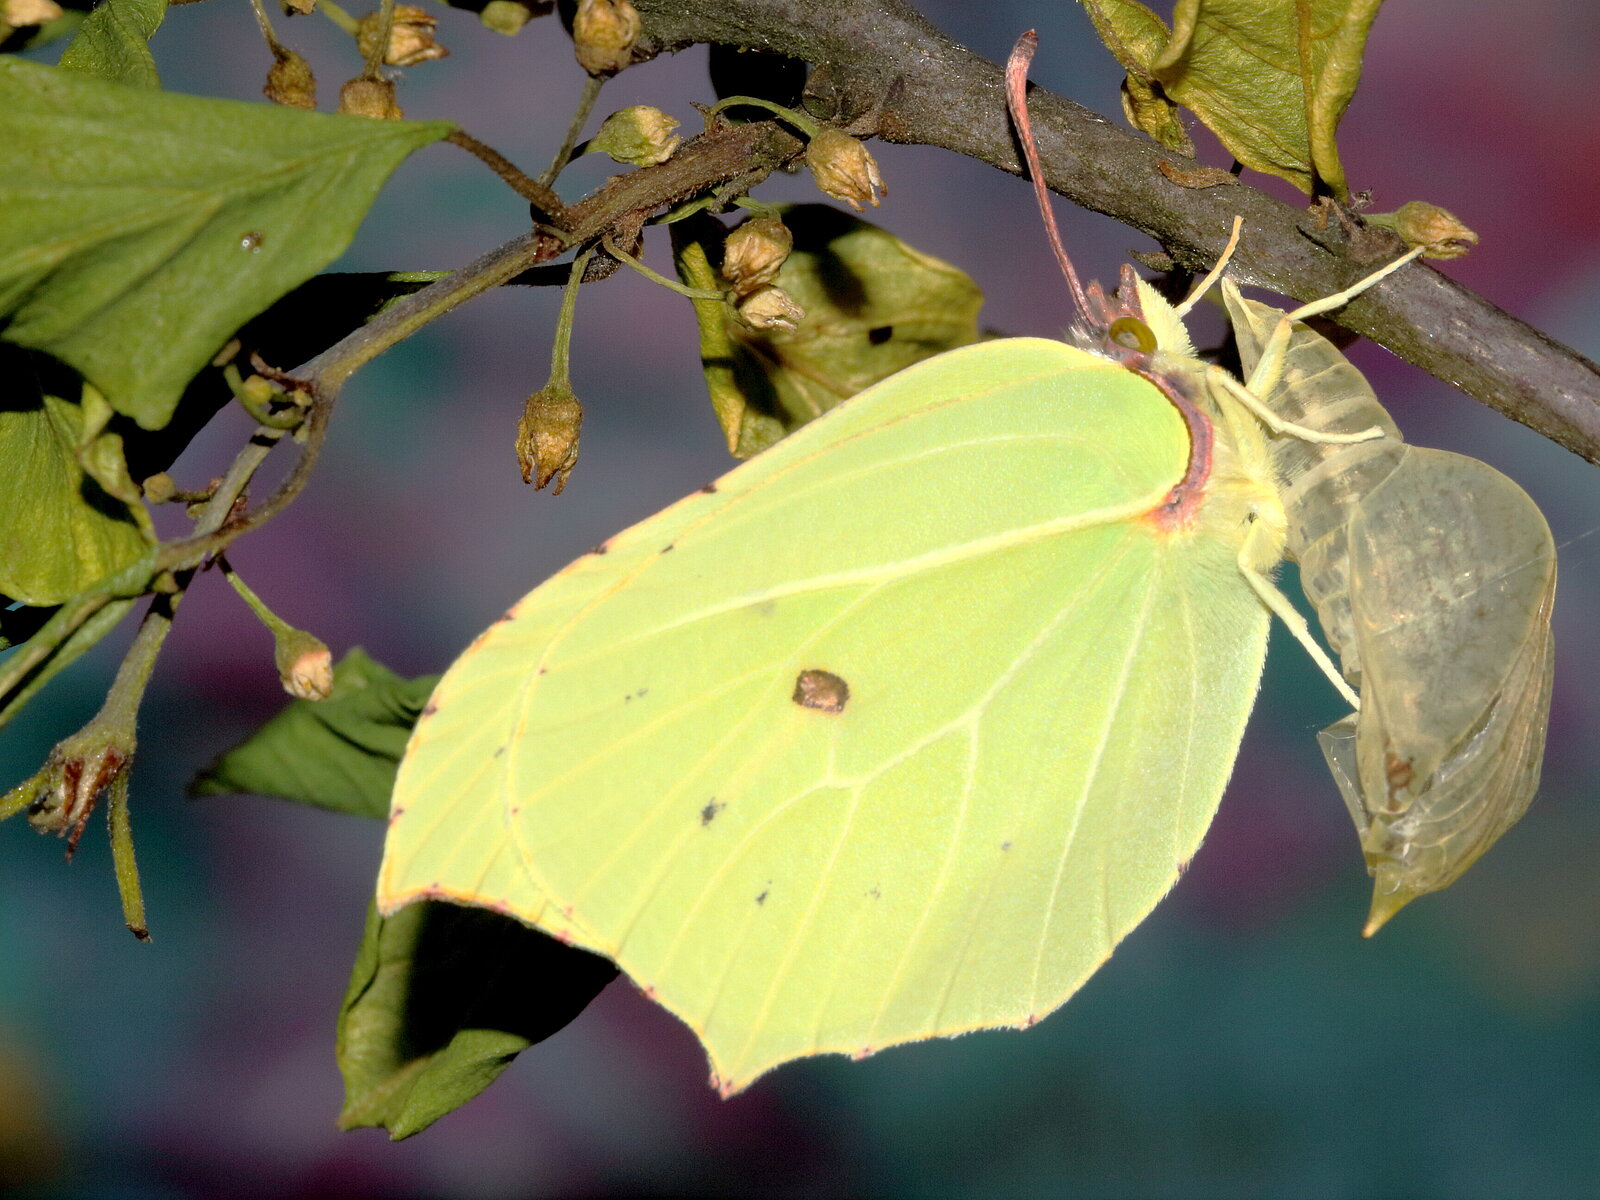 Ein Schmetterling hält sich mit den Beinen an seinem transparenten Kokon fest. Er ist im Profil zu sehen. Durch die blassgelben Flügel ziehen sich feine Adern. 